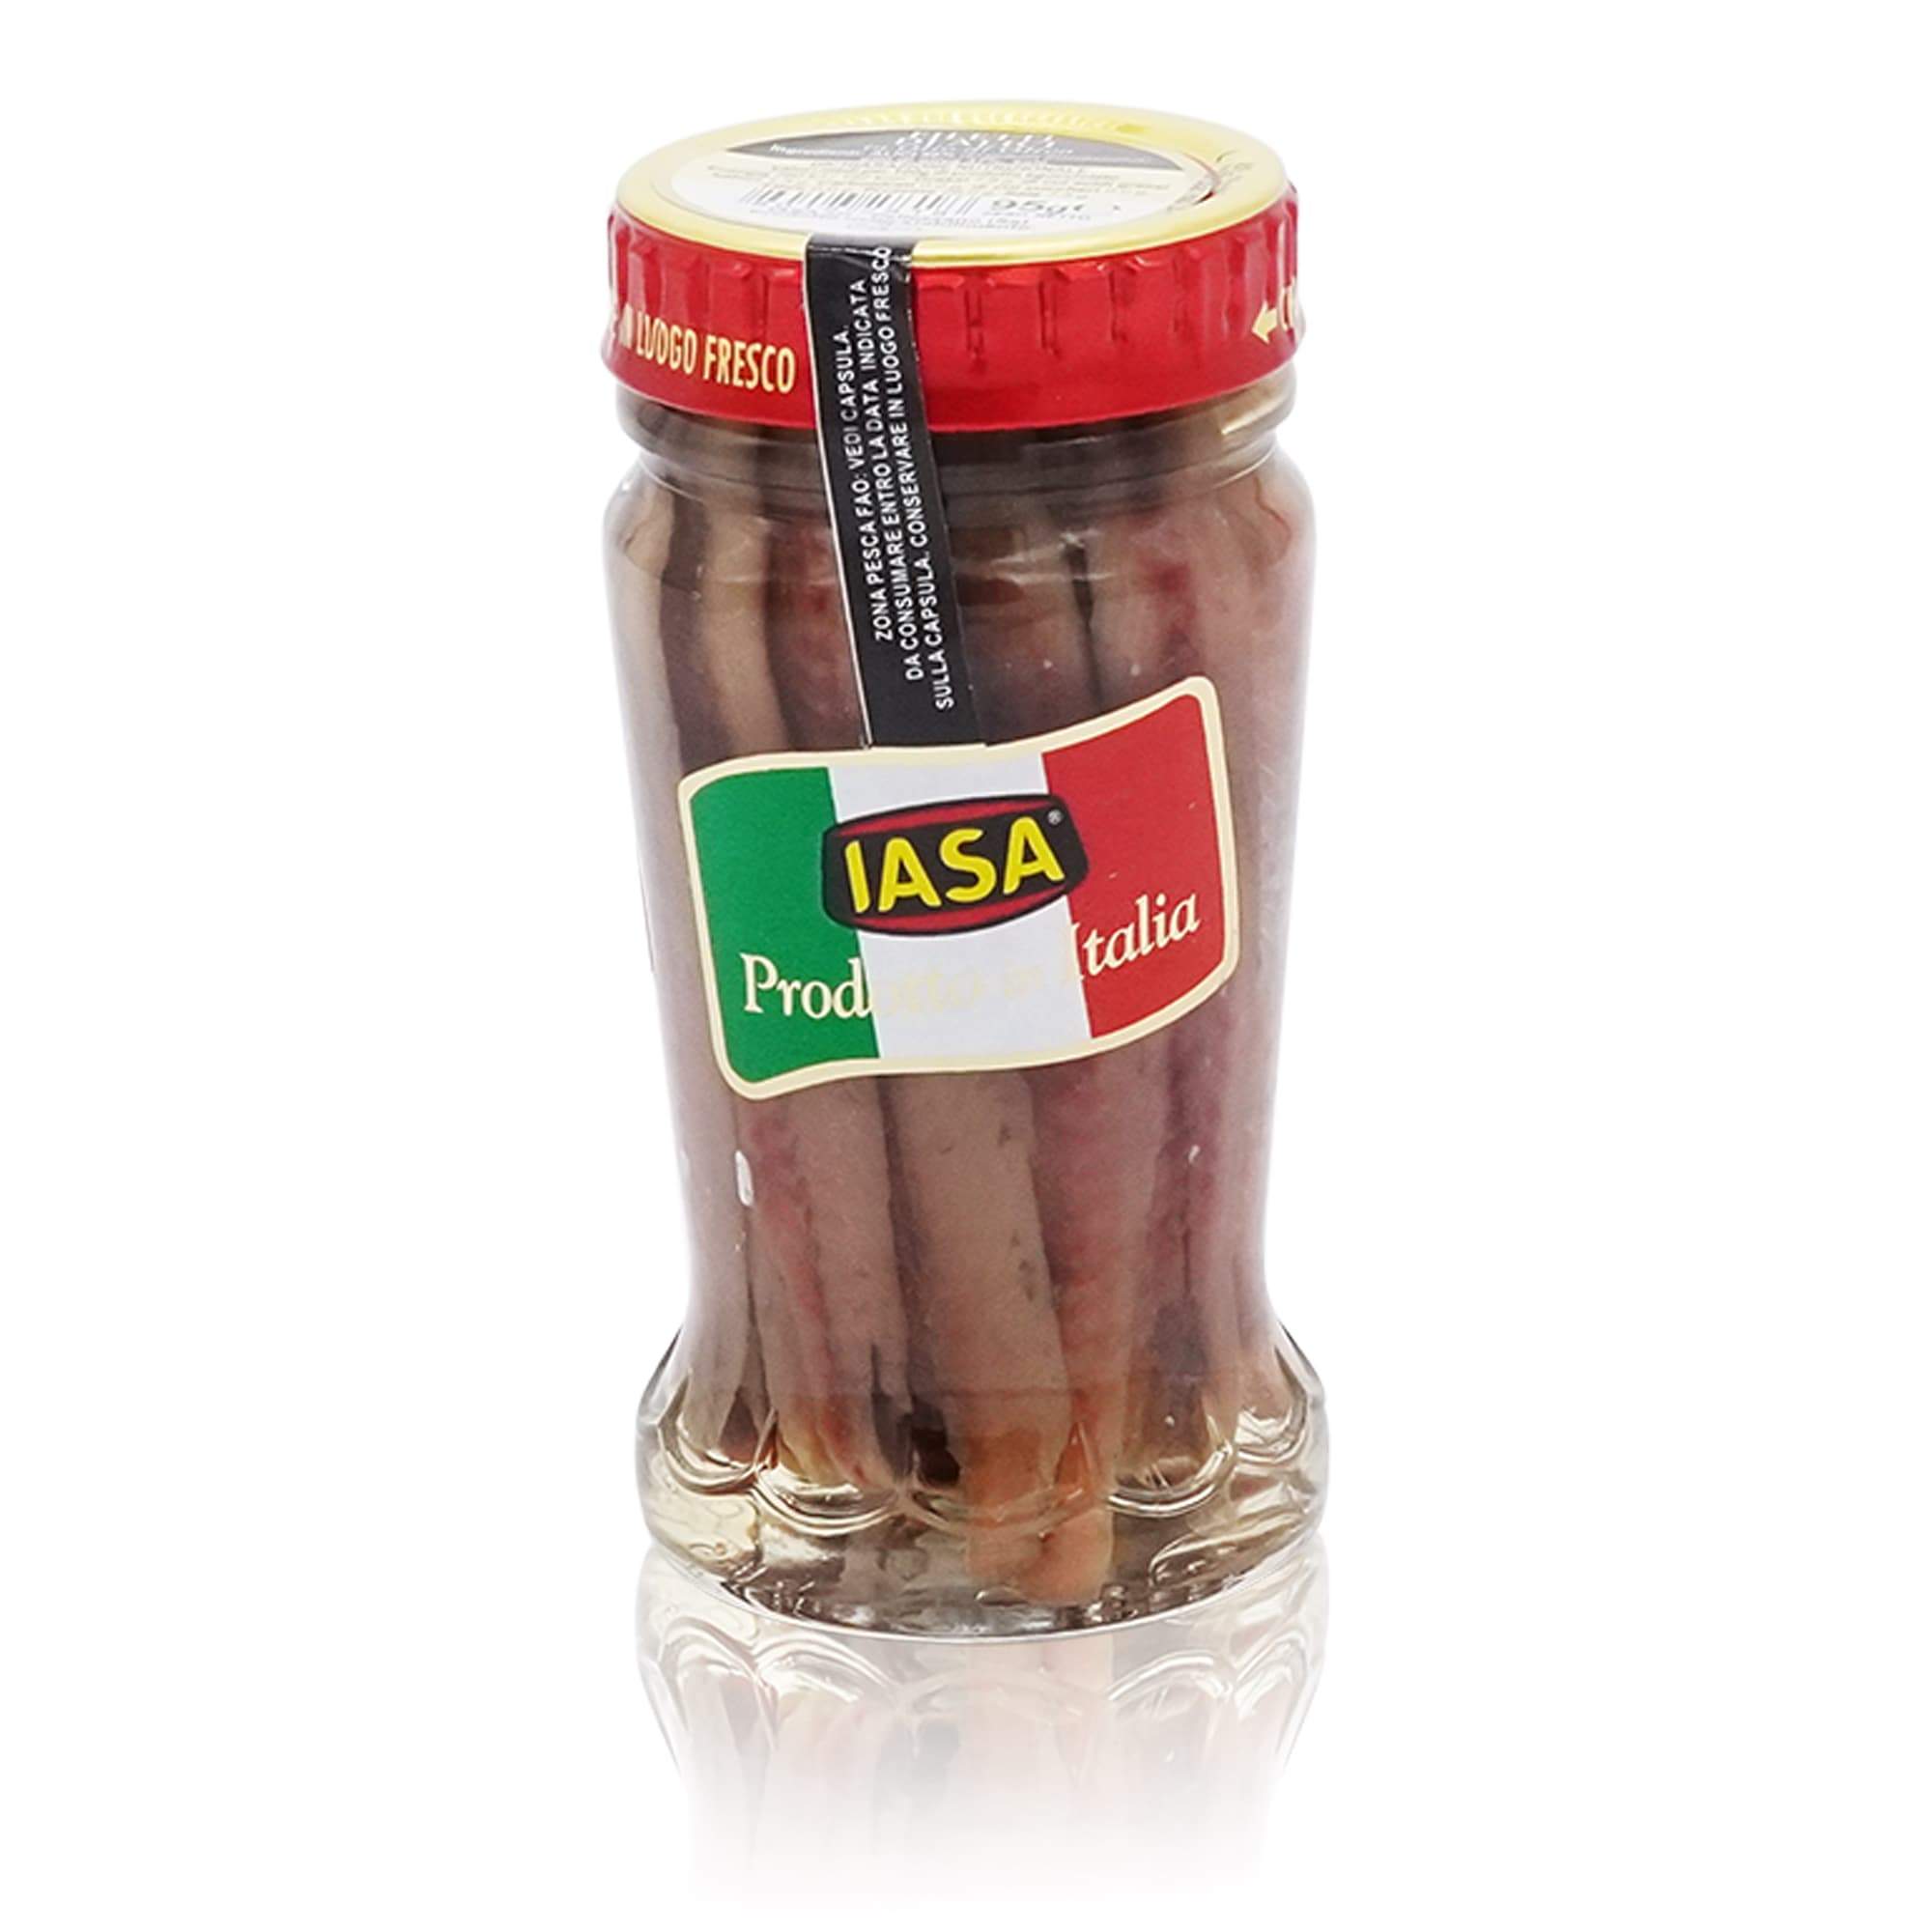 IASA Filetti Alici in olio – Sardellenfilets in Olivenöl - 0,095kg